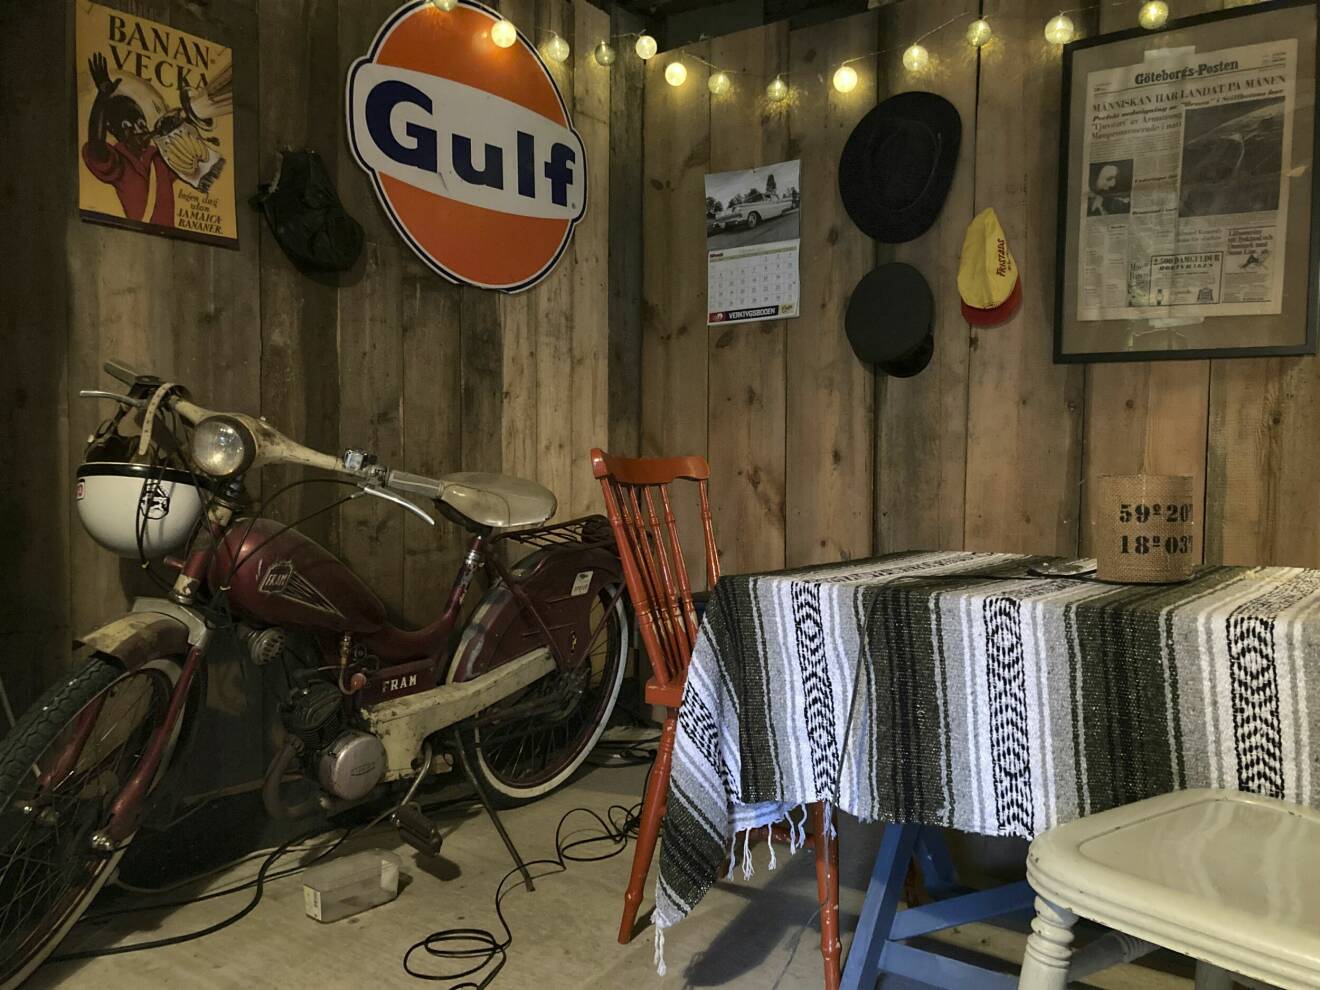 En samling retroprylar i hemmiljö, däribland en Gulf-skylt, en gammal moped, pinnstol, vävd duk och tidningsklipp på väggen.